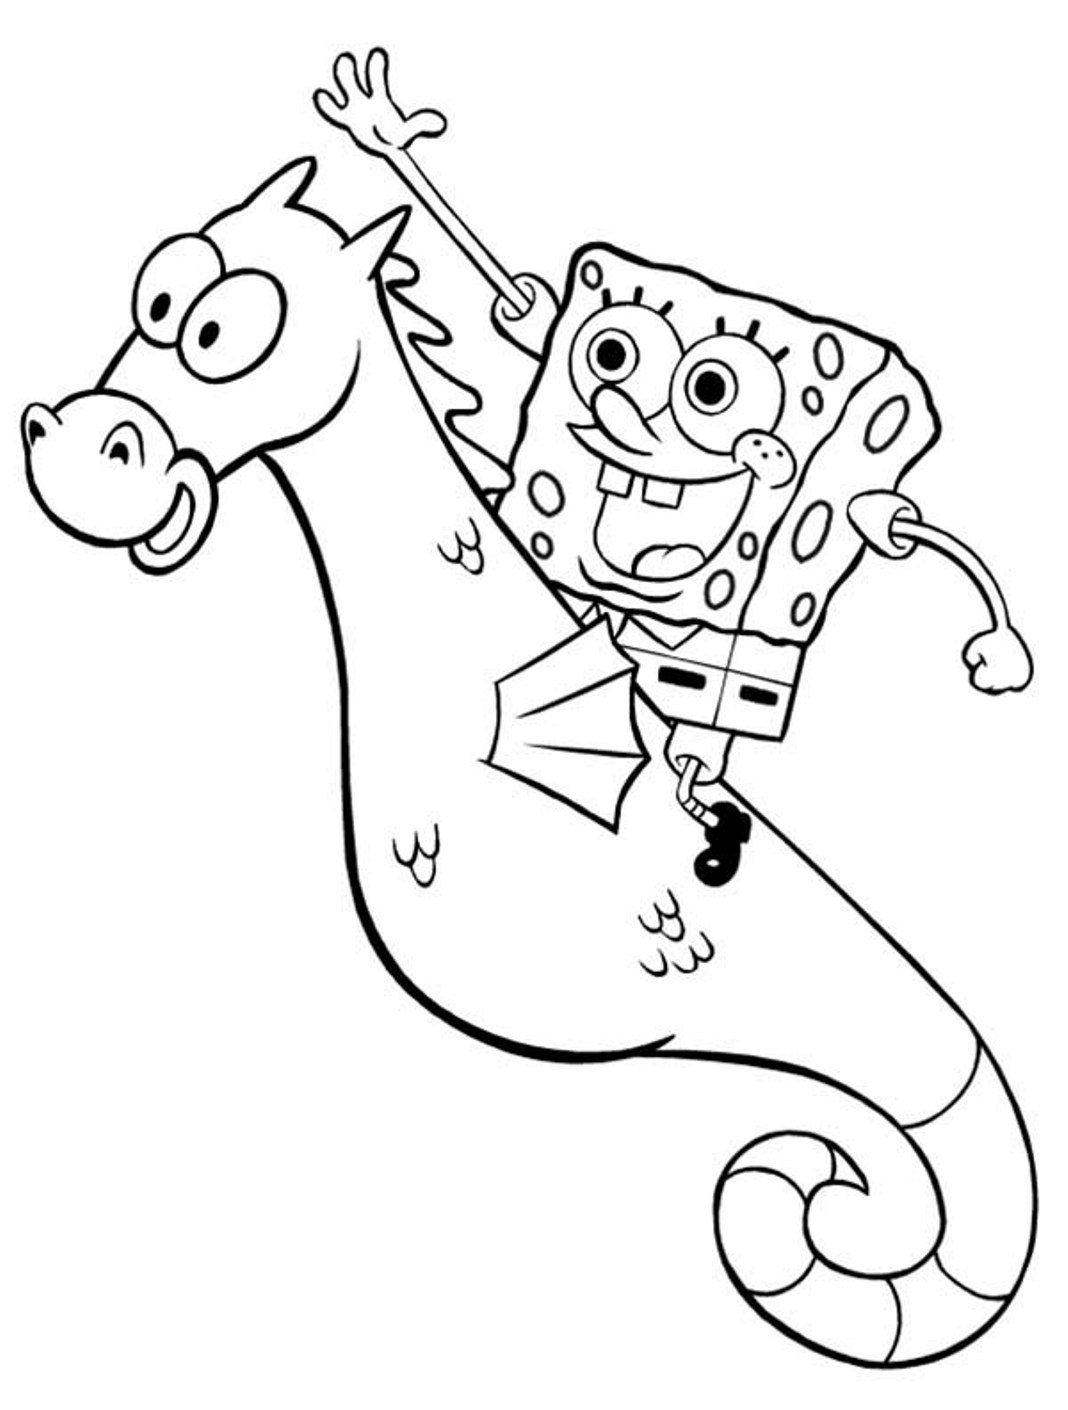 Cartoon Spongebob Riding Seahorse Coloring Page